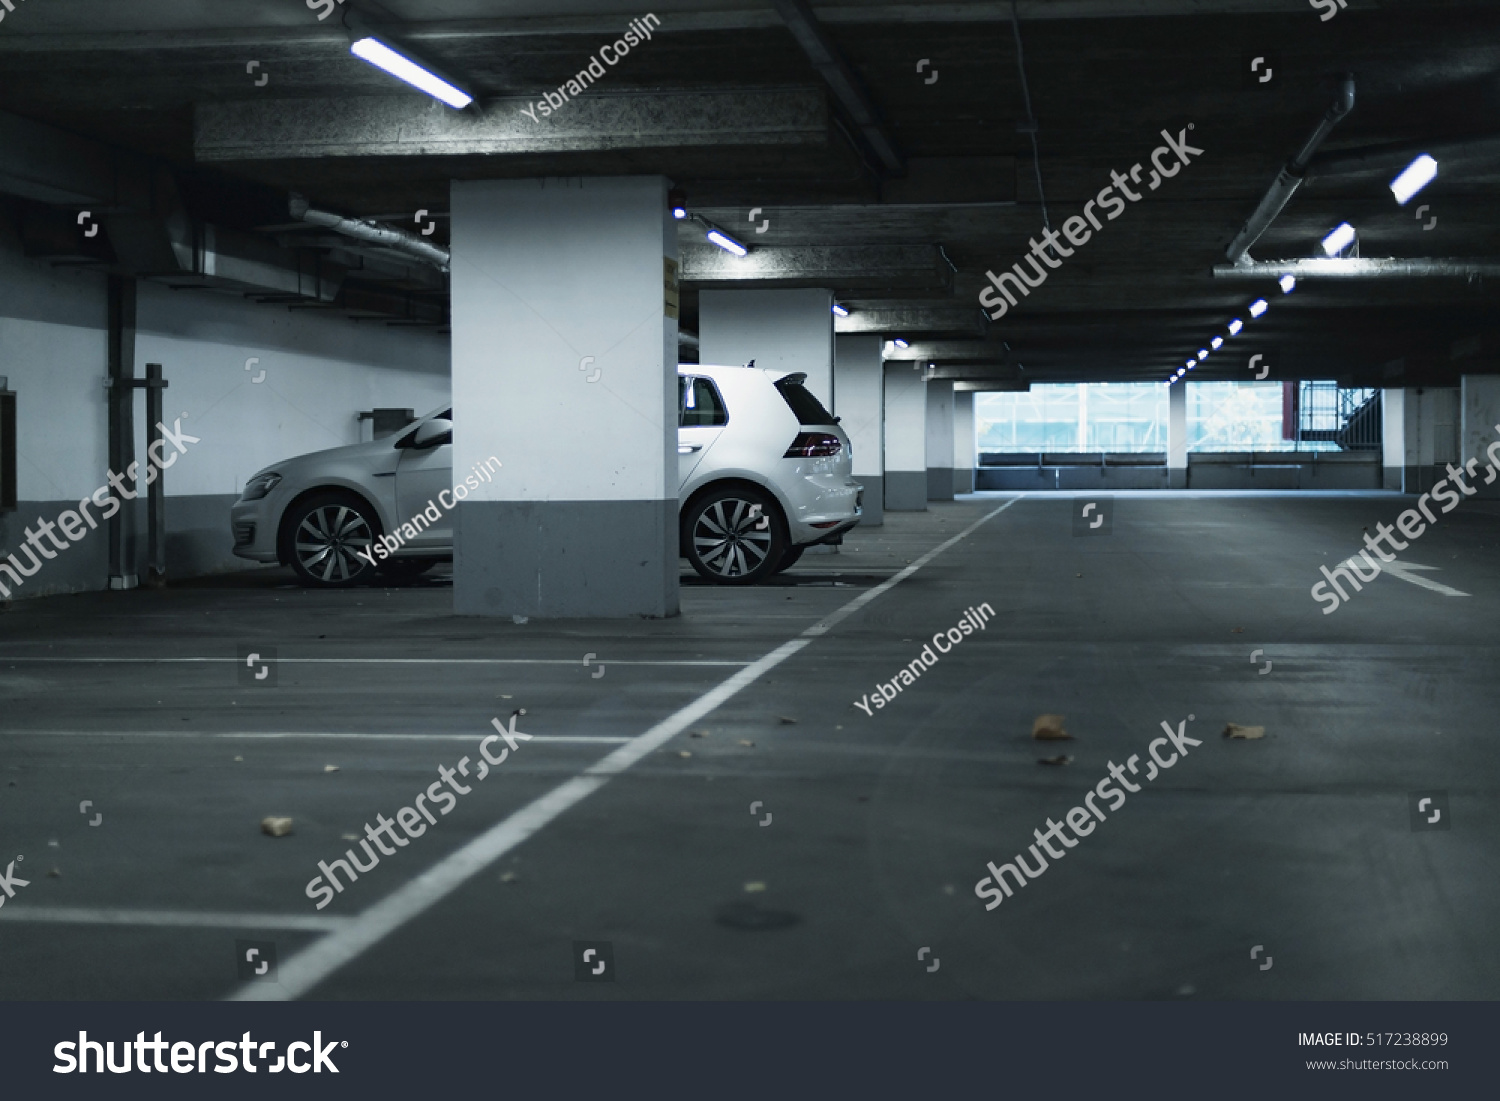 White car parked in empty parking garage. #517238899